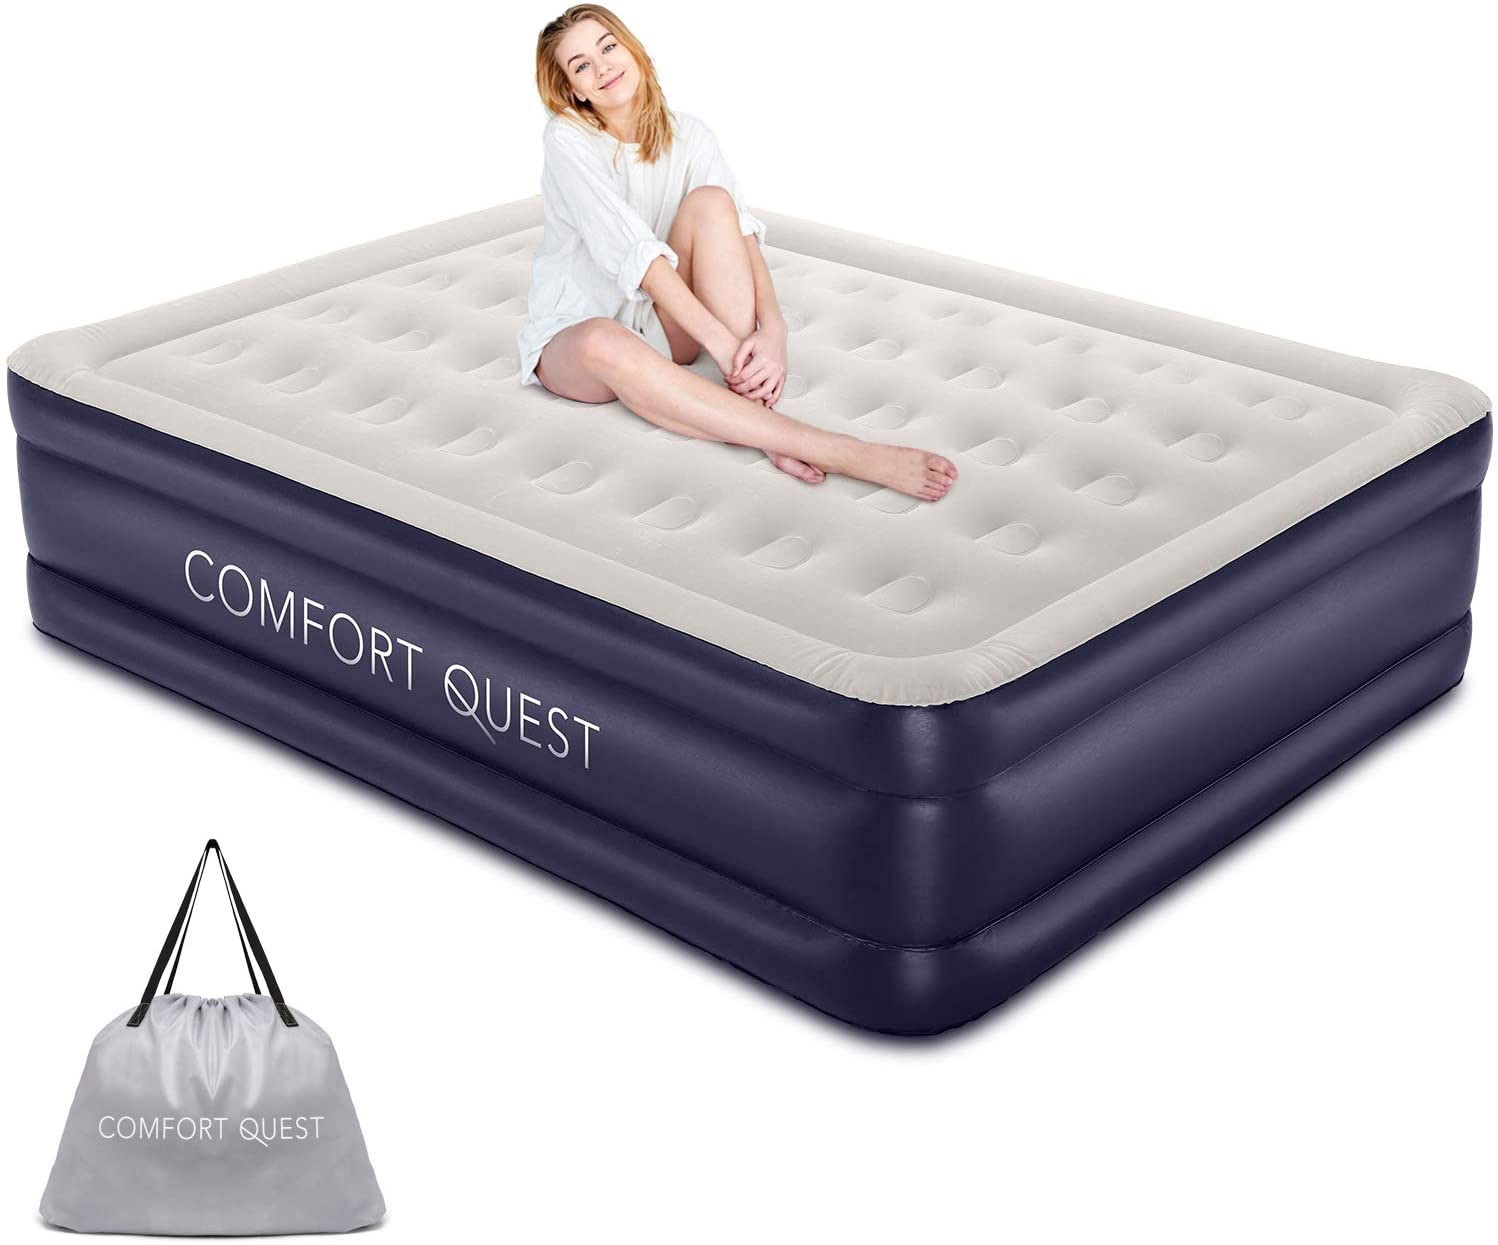 quest air mattress weight limit